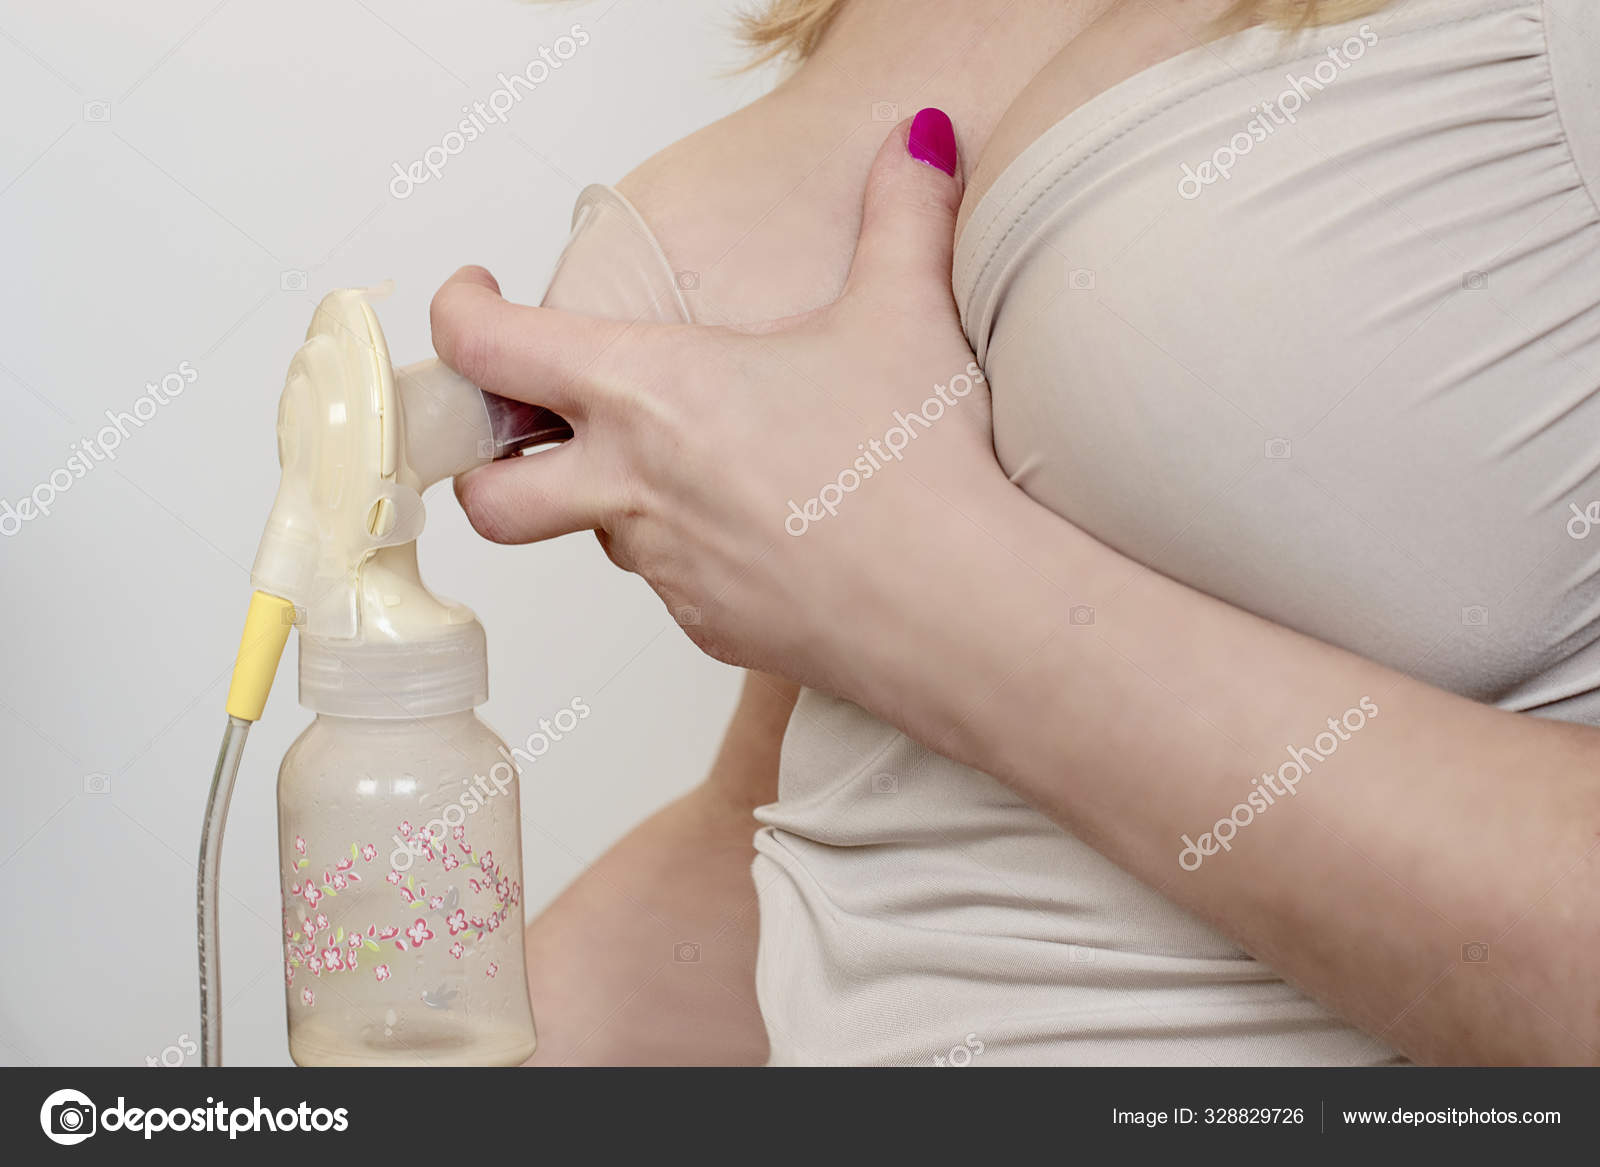 сонник молок из груди фото 11